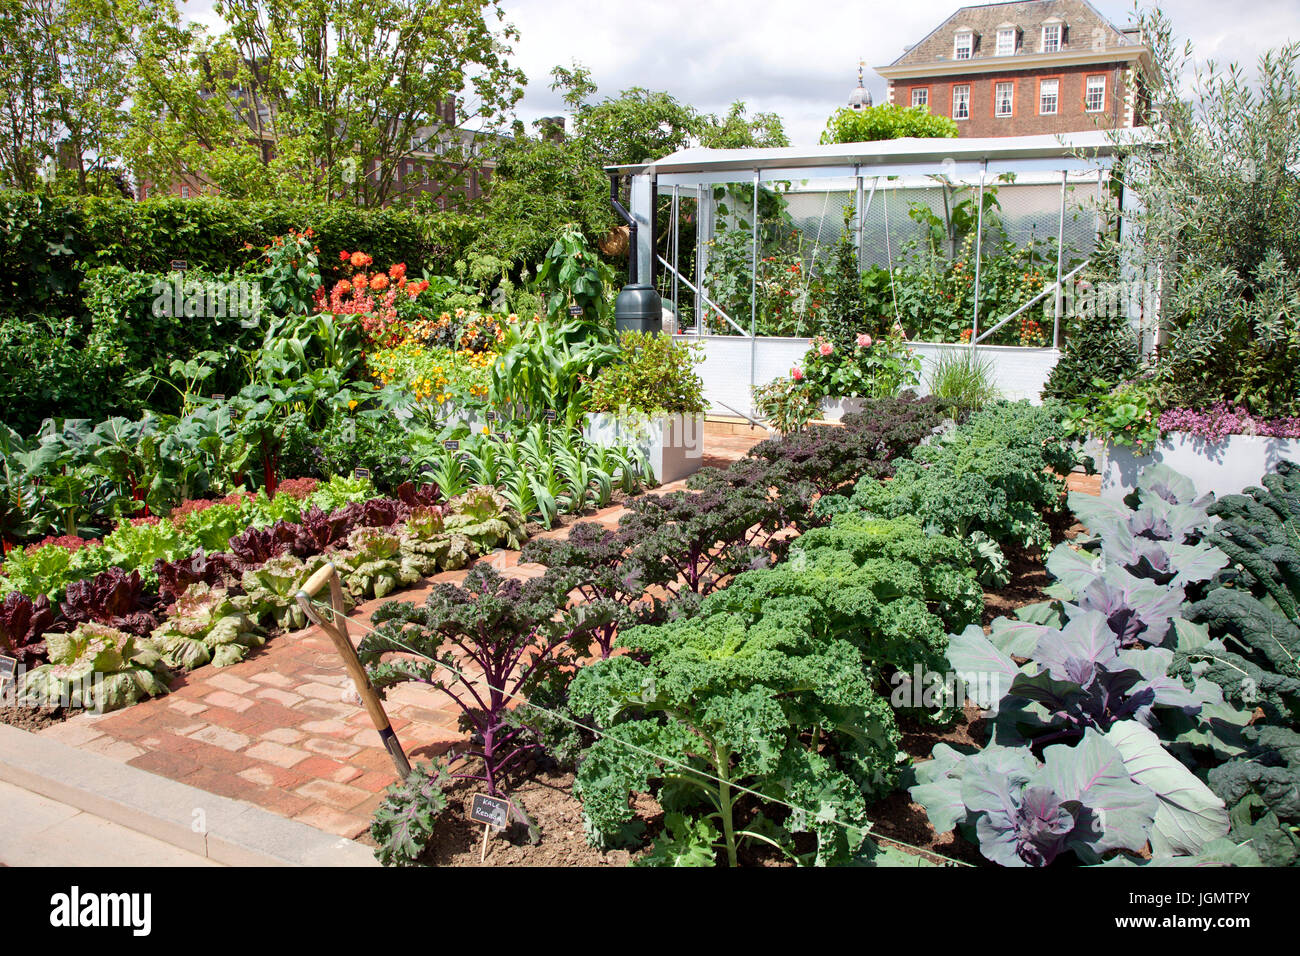 Chris Evans sabor jardín, BBC Radio 2 sentirse bien jardín, diseñado por Jon Wheatley para el Chelsea Flower Show 2017 Foto de stock